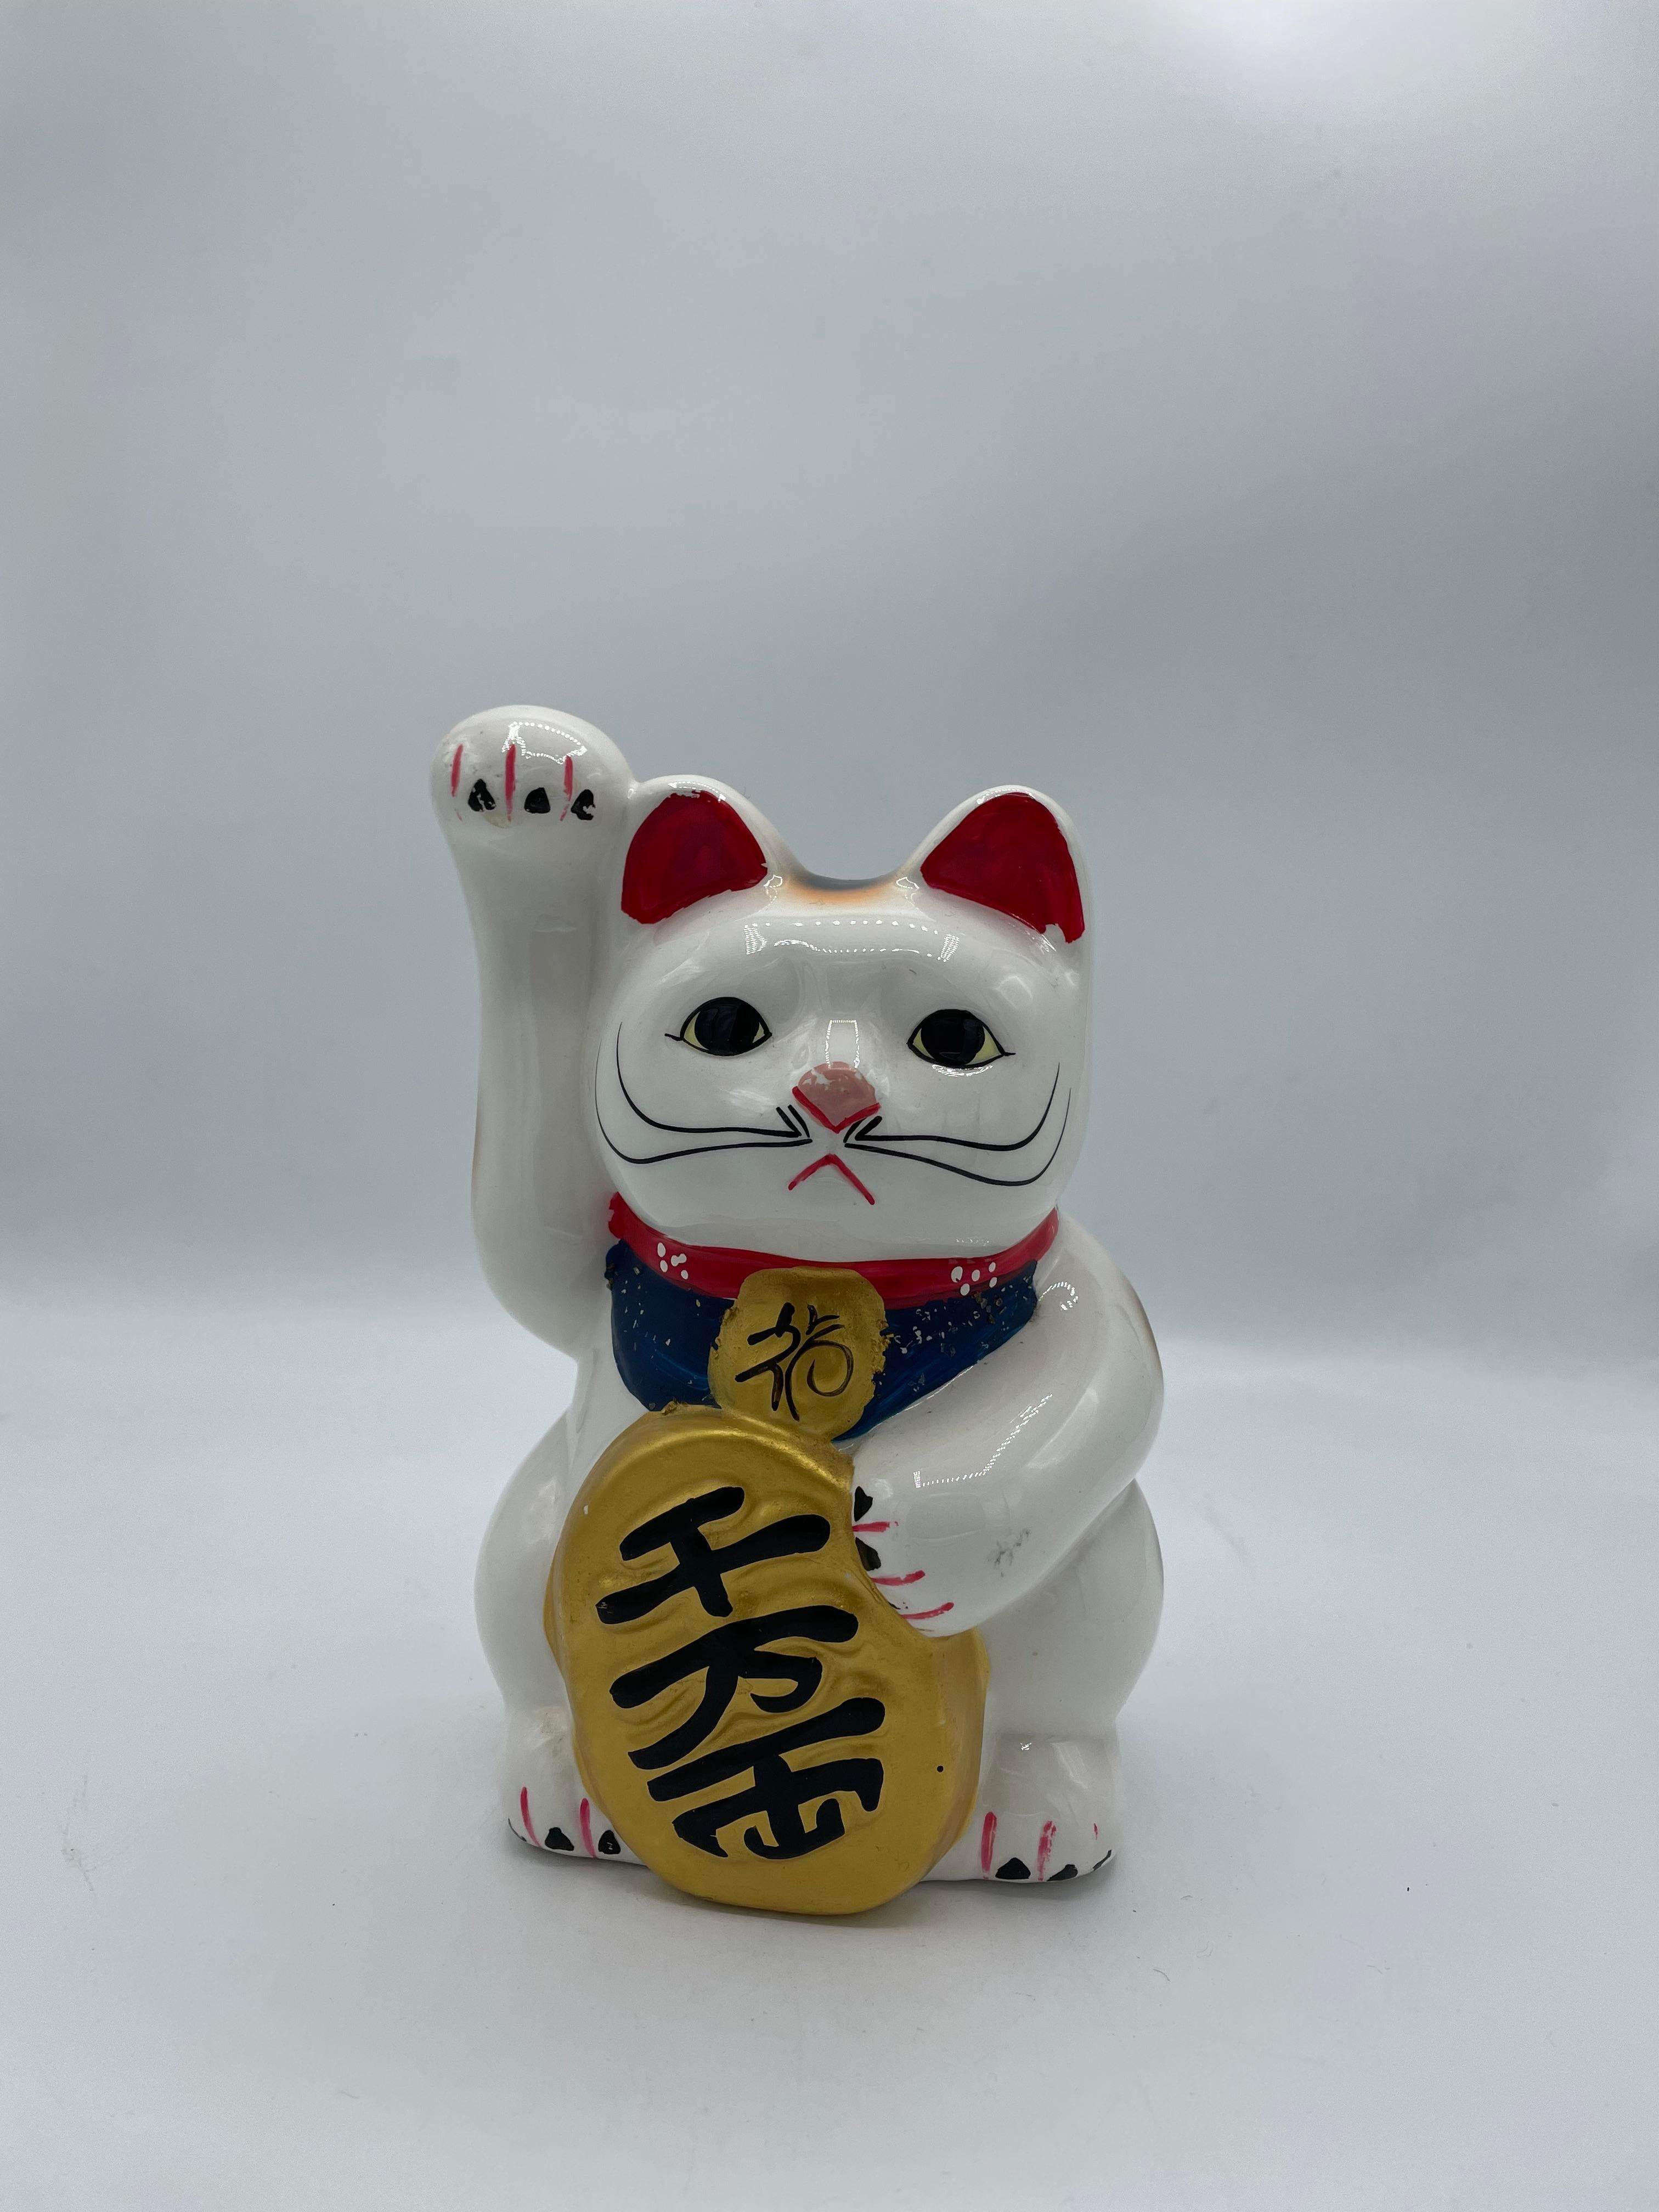 Voici une tirelire vintage représentant un chat manekineko. Elle est en porcelaine et a été fabriquée dans les années 1980, à l'ère Showa.

Le maneki-neko est une figurine japonaise courante dont on pense souvent qu'elle porte chance à son